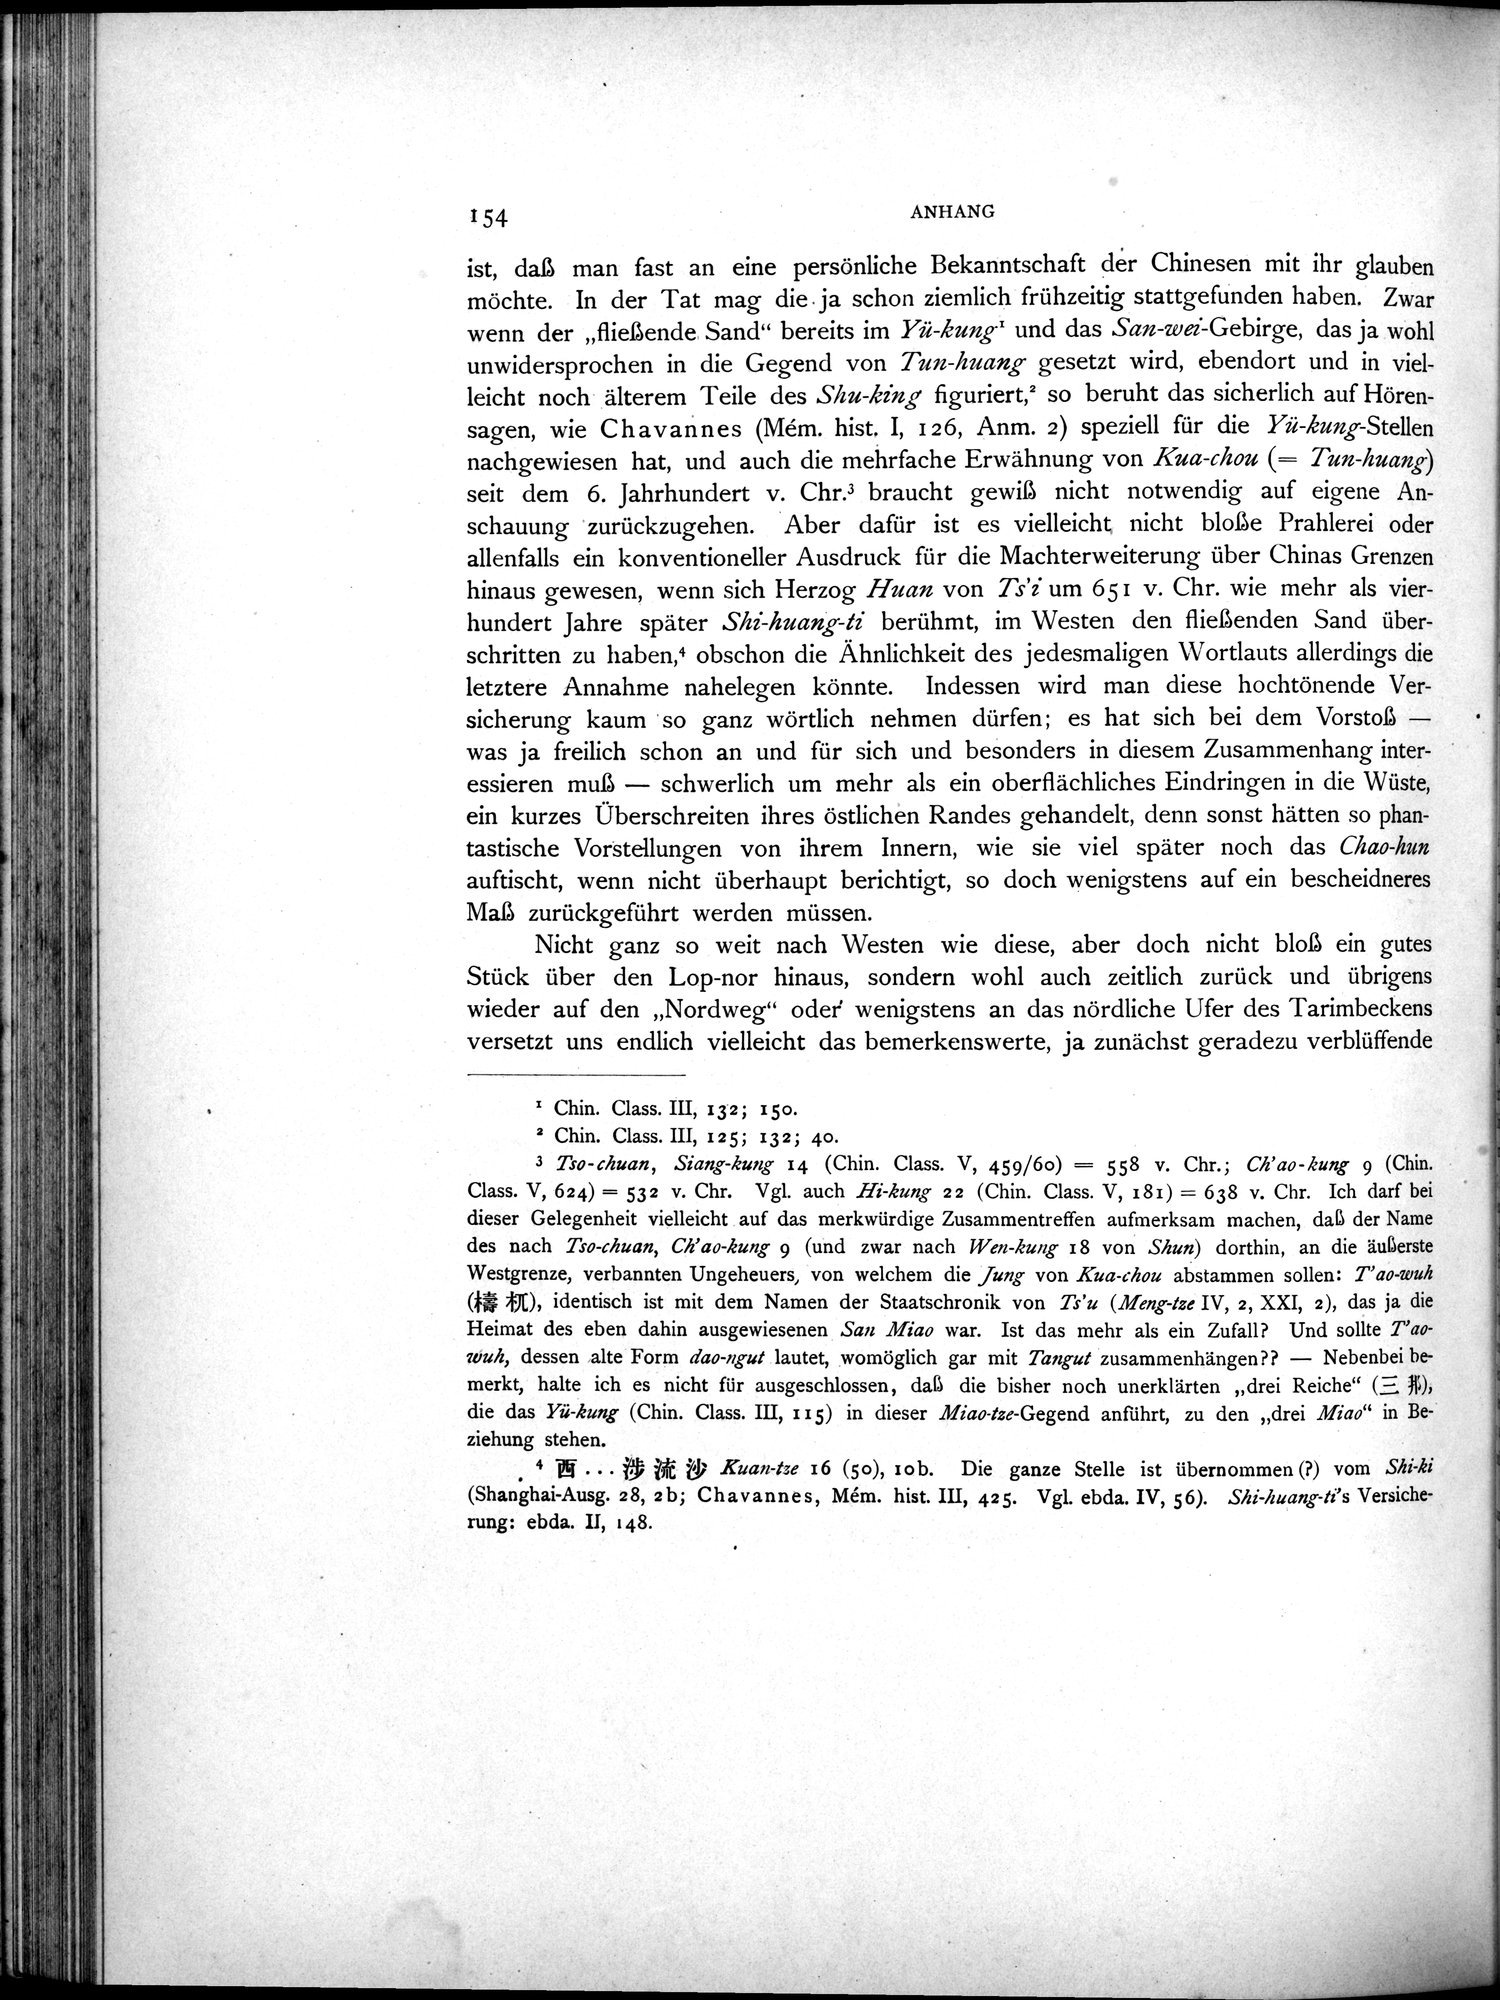 Die Chinesischen Handschriften- und sonstigen Kleinfunde Sven Hedins in Lou-lan : vol.1 / Page 178 (Grayscale High Resolution Image)